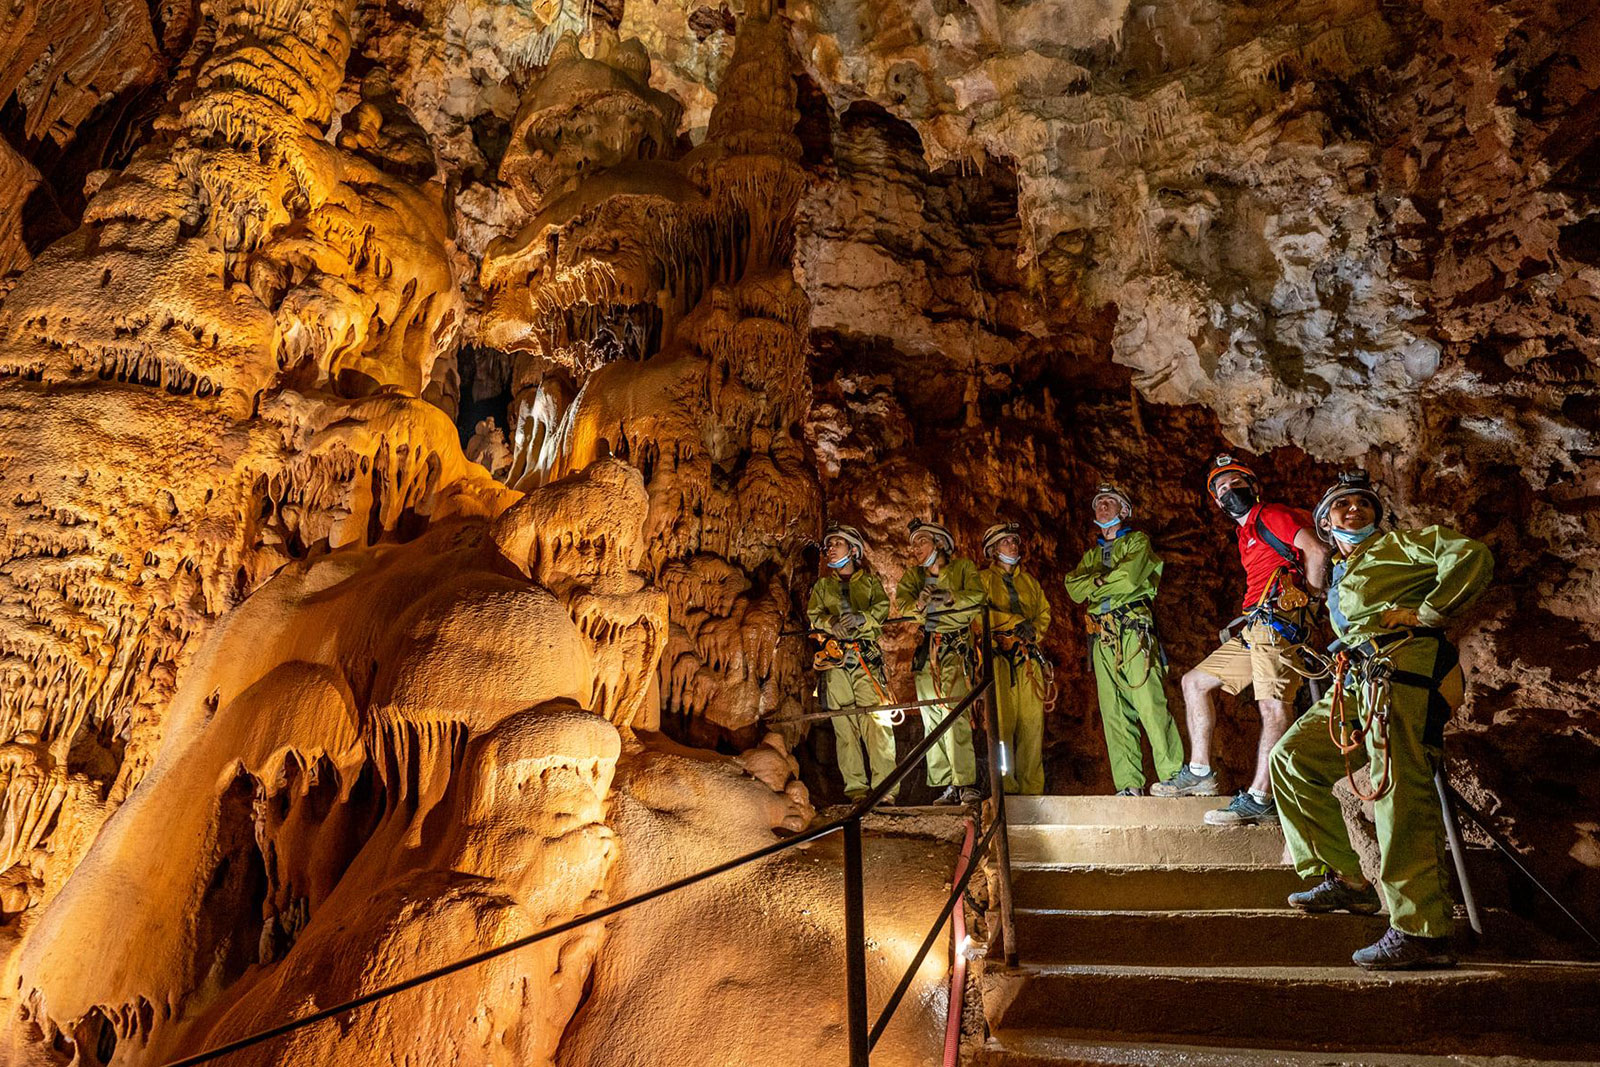 Leerzame dagtochten, grotten in Frankrijk met stalagmieten, stalactieten en kristallen in de omgeving van Hérault Occitanië. Fotocredits: facebook.com/clamouse.